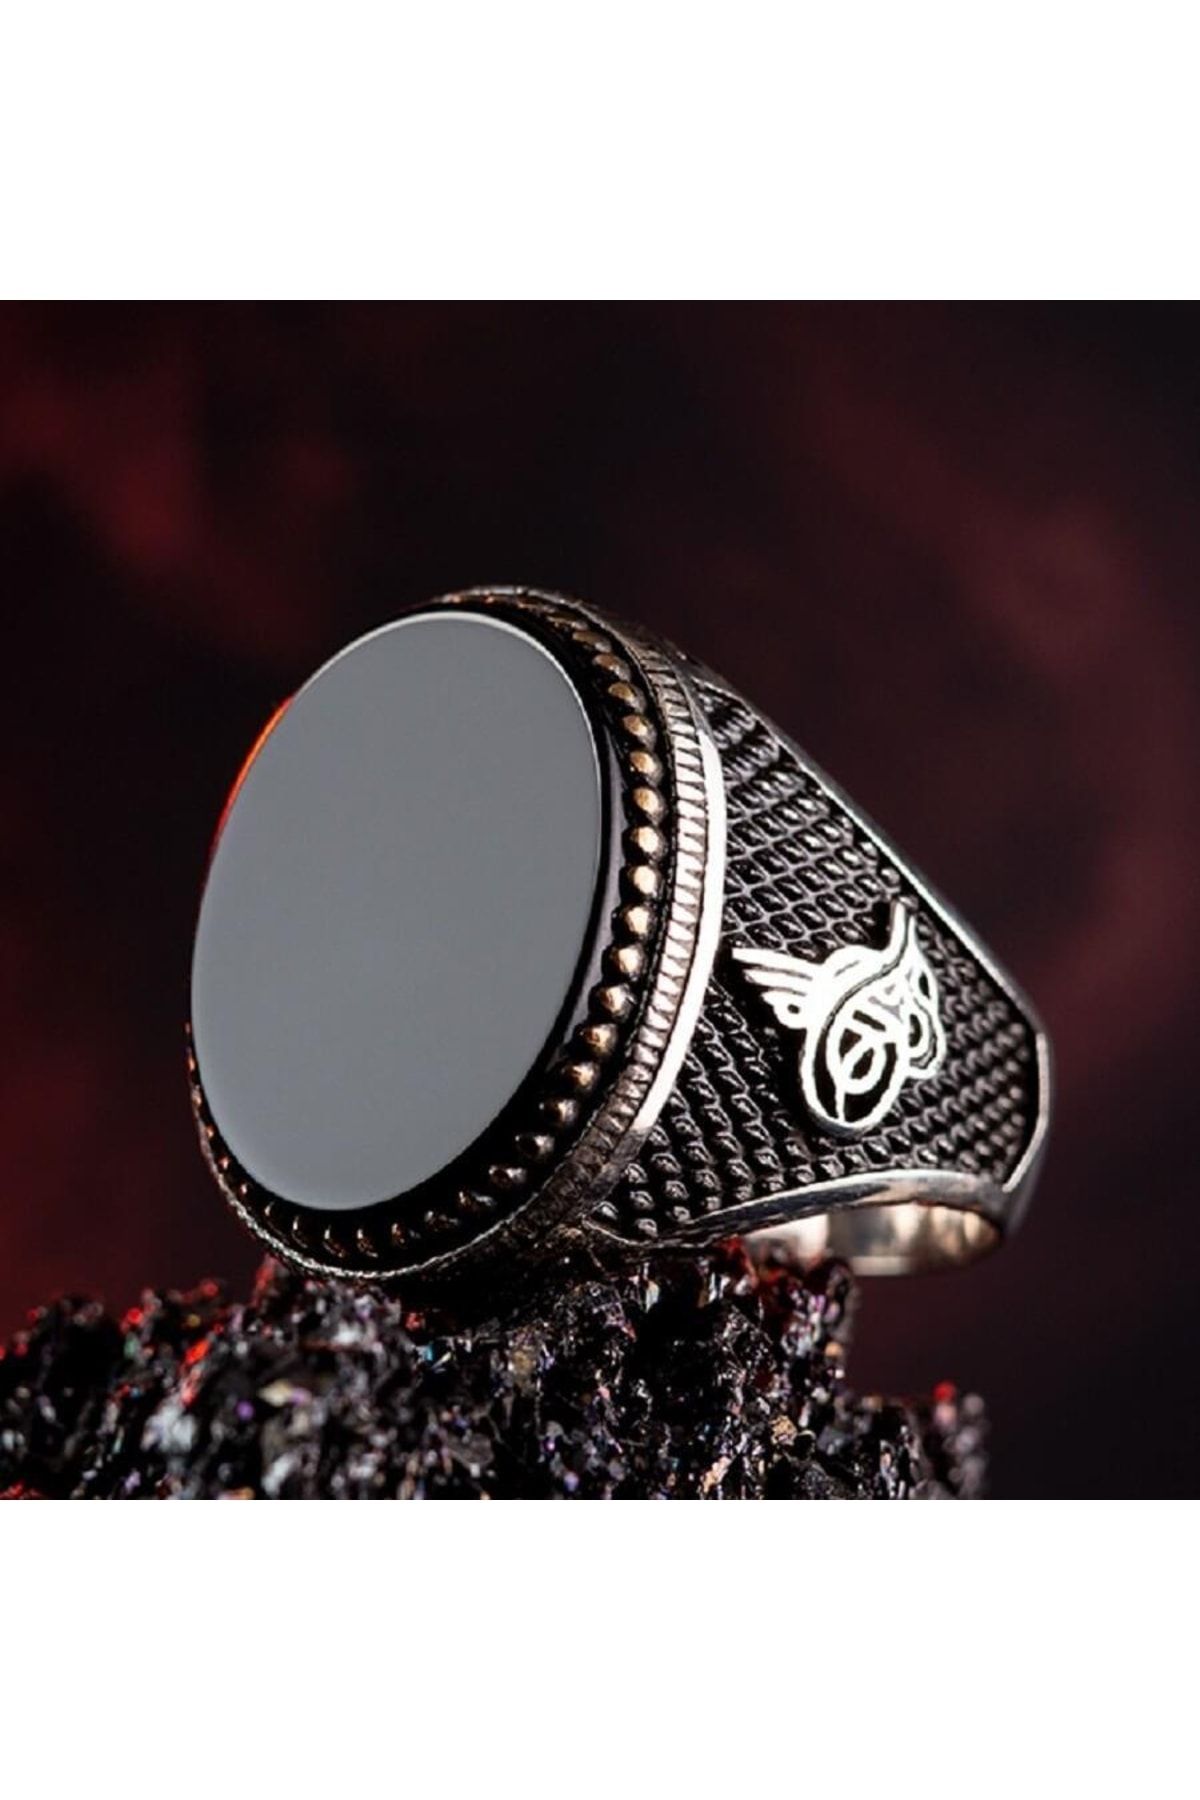 Anı Yüzük Erkek Siyah Oniks Taşlı Osmanlı Tuğralı Lüks Model Özel Tasarım 925 Ayar Gümüş Yüzük